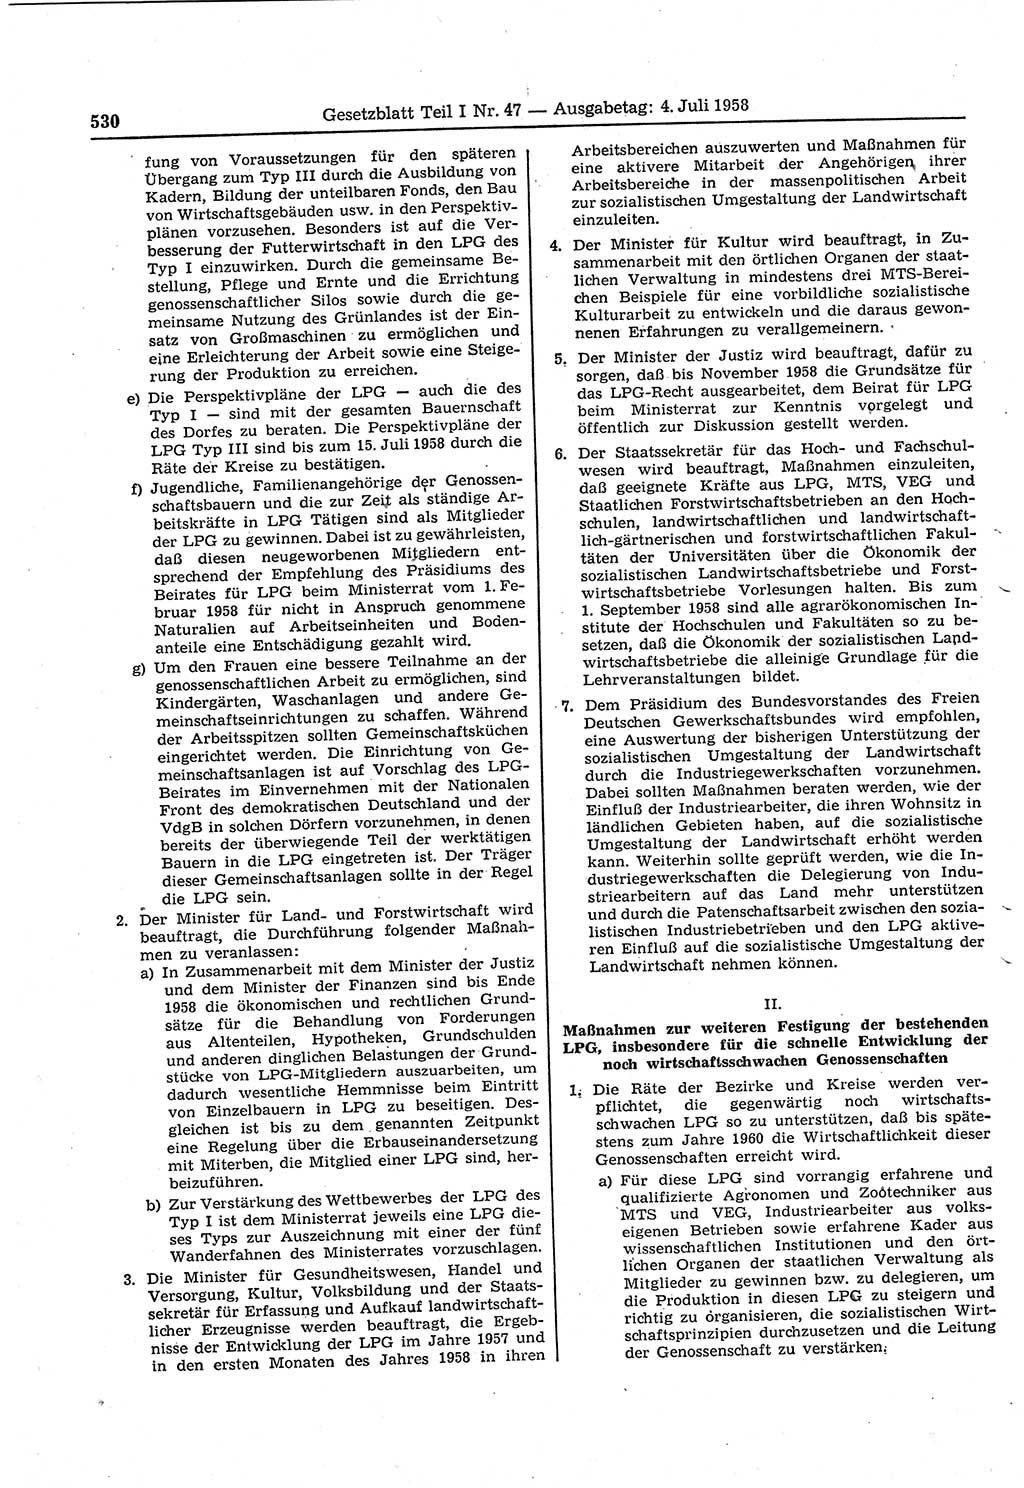 Gesetzblatt (GBl.) der Deutschen Demokratischen Republik (DDR) Teil Ⅰ 1958, Seite 530 (GBl. DDR Ⅰ 1958, S. 530)